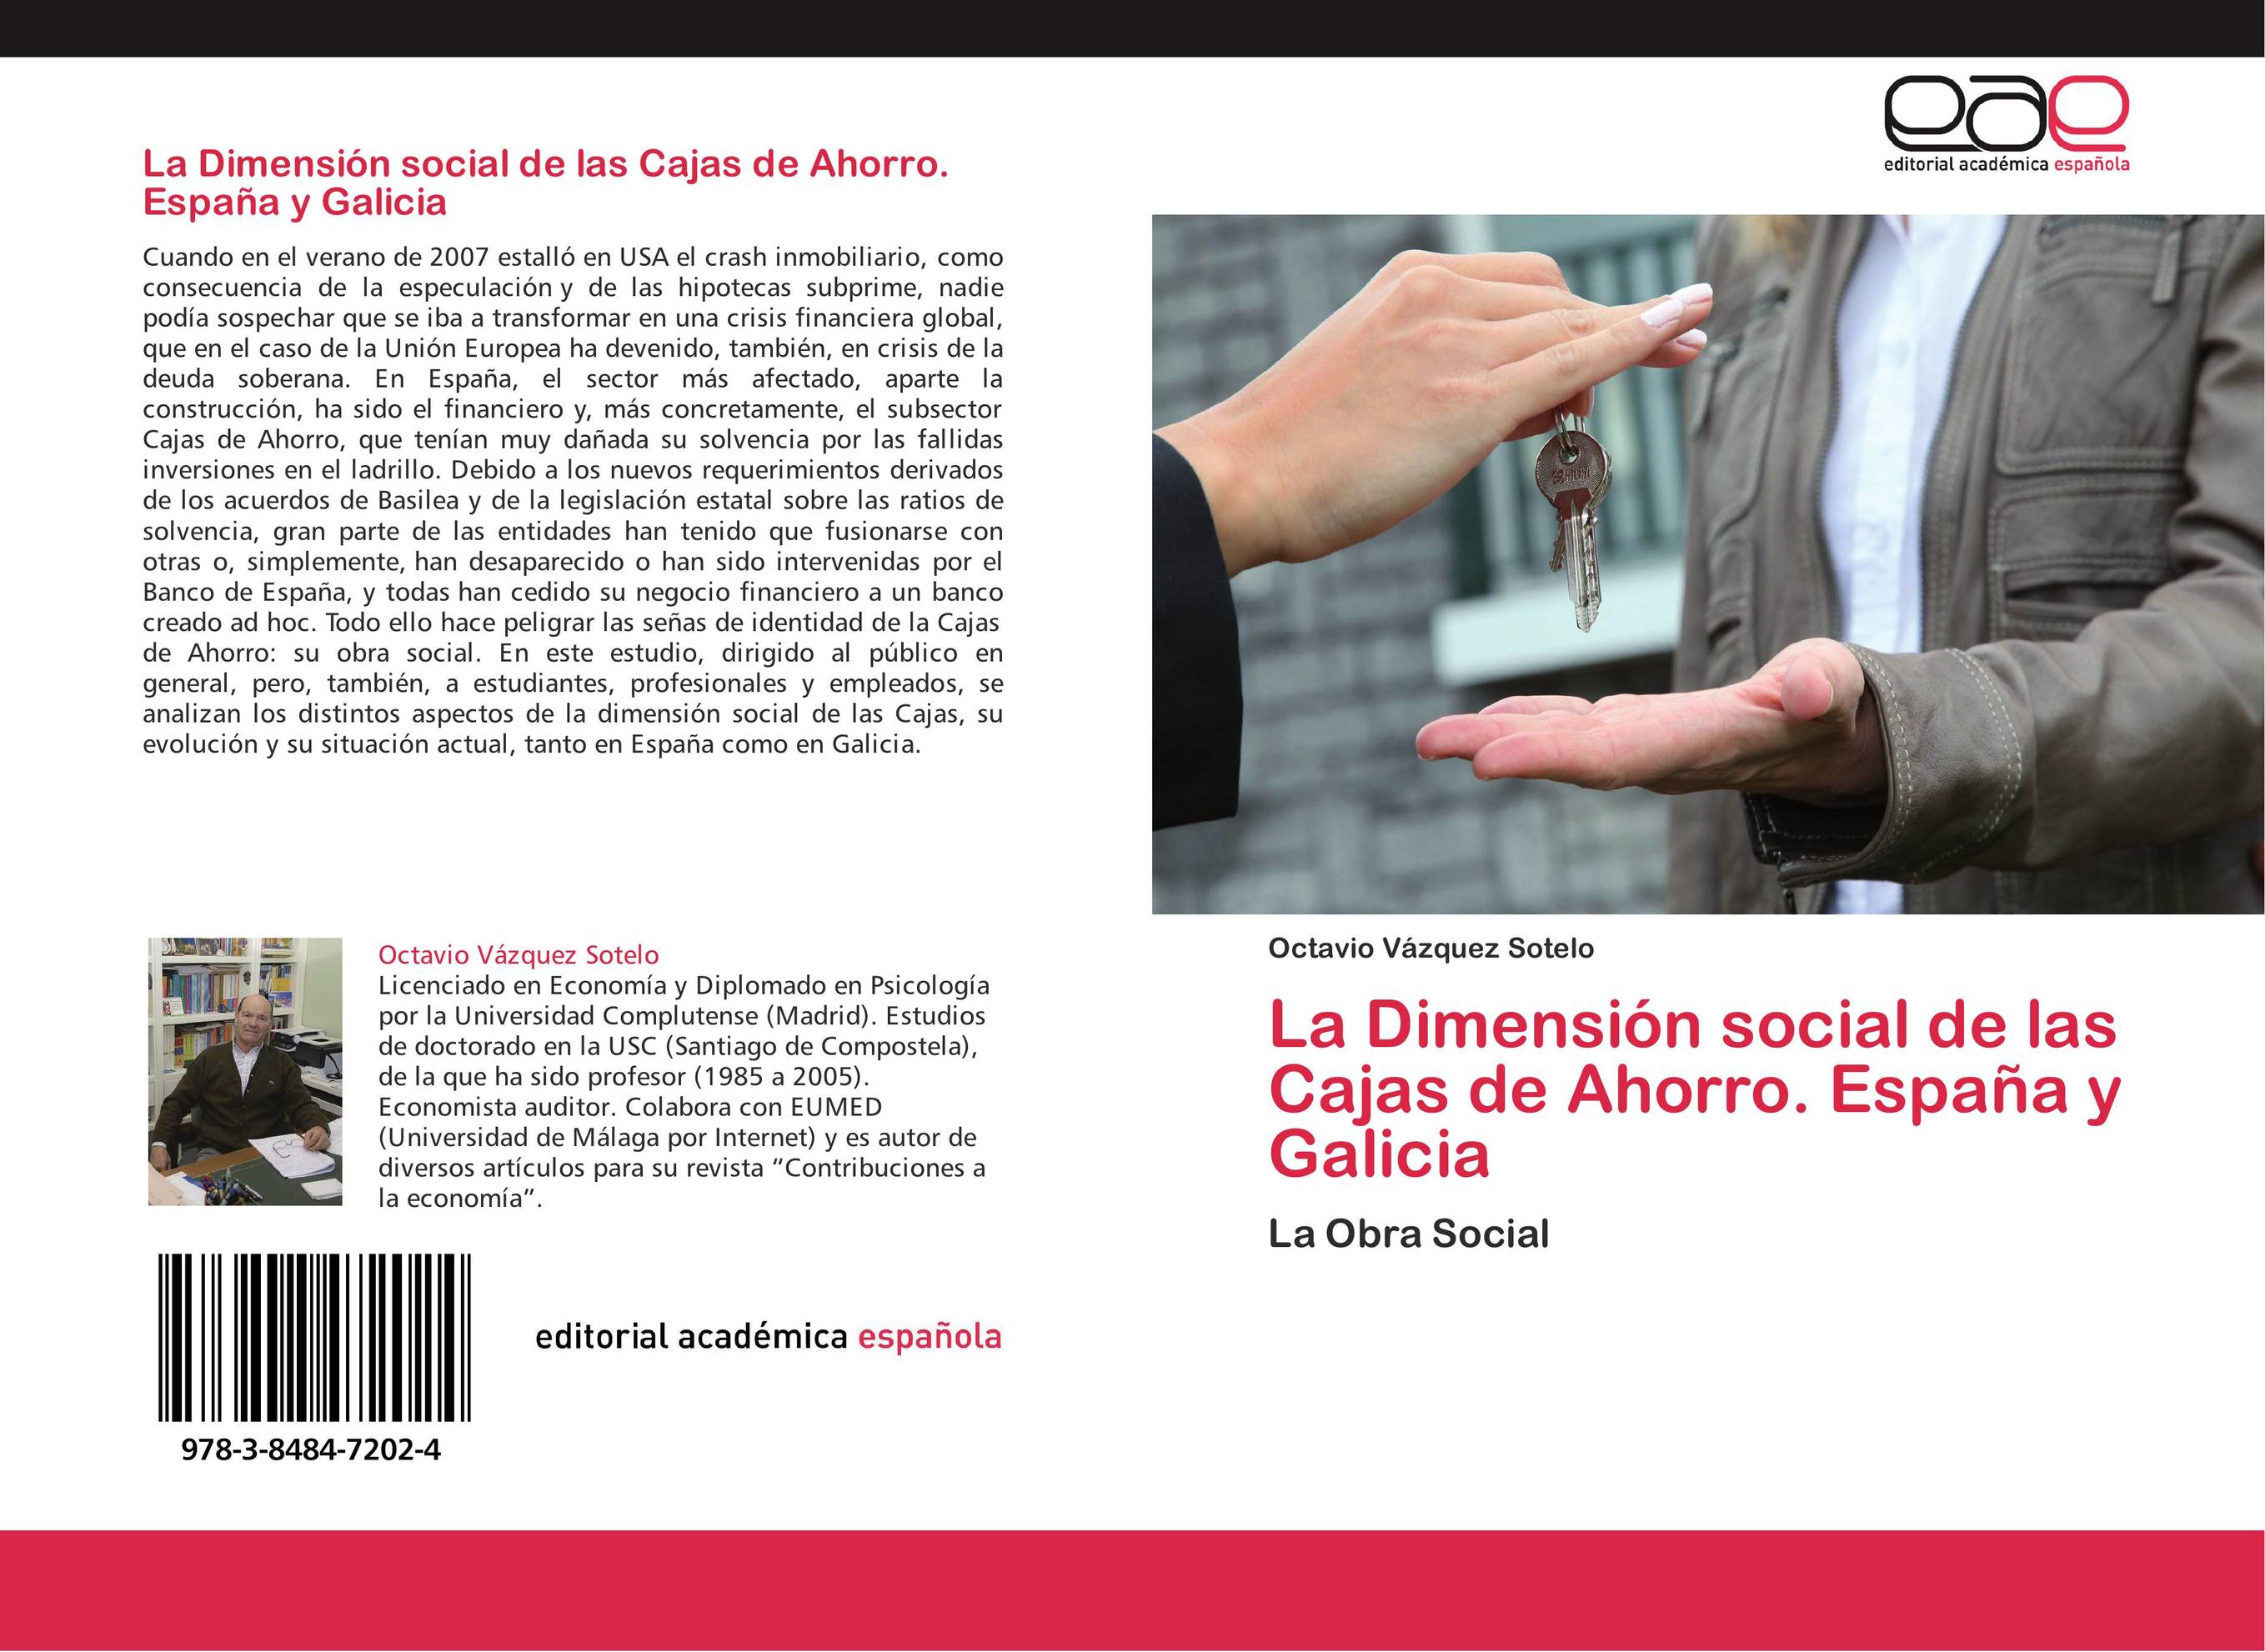 La Dimensión social de las Cajas de Ahorro. España y Galicia